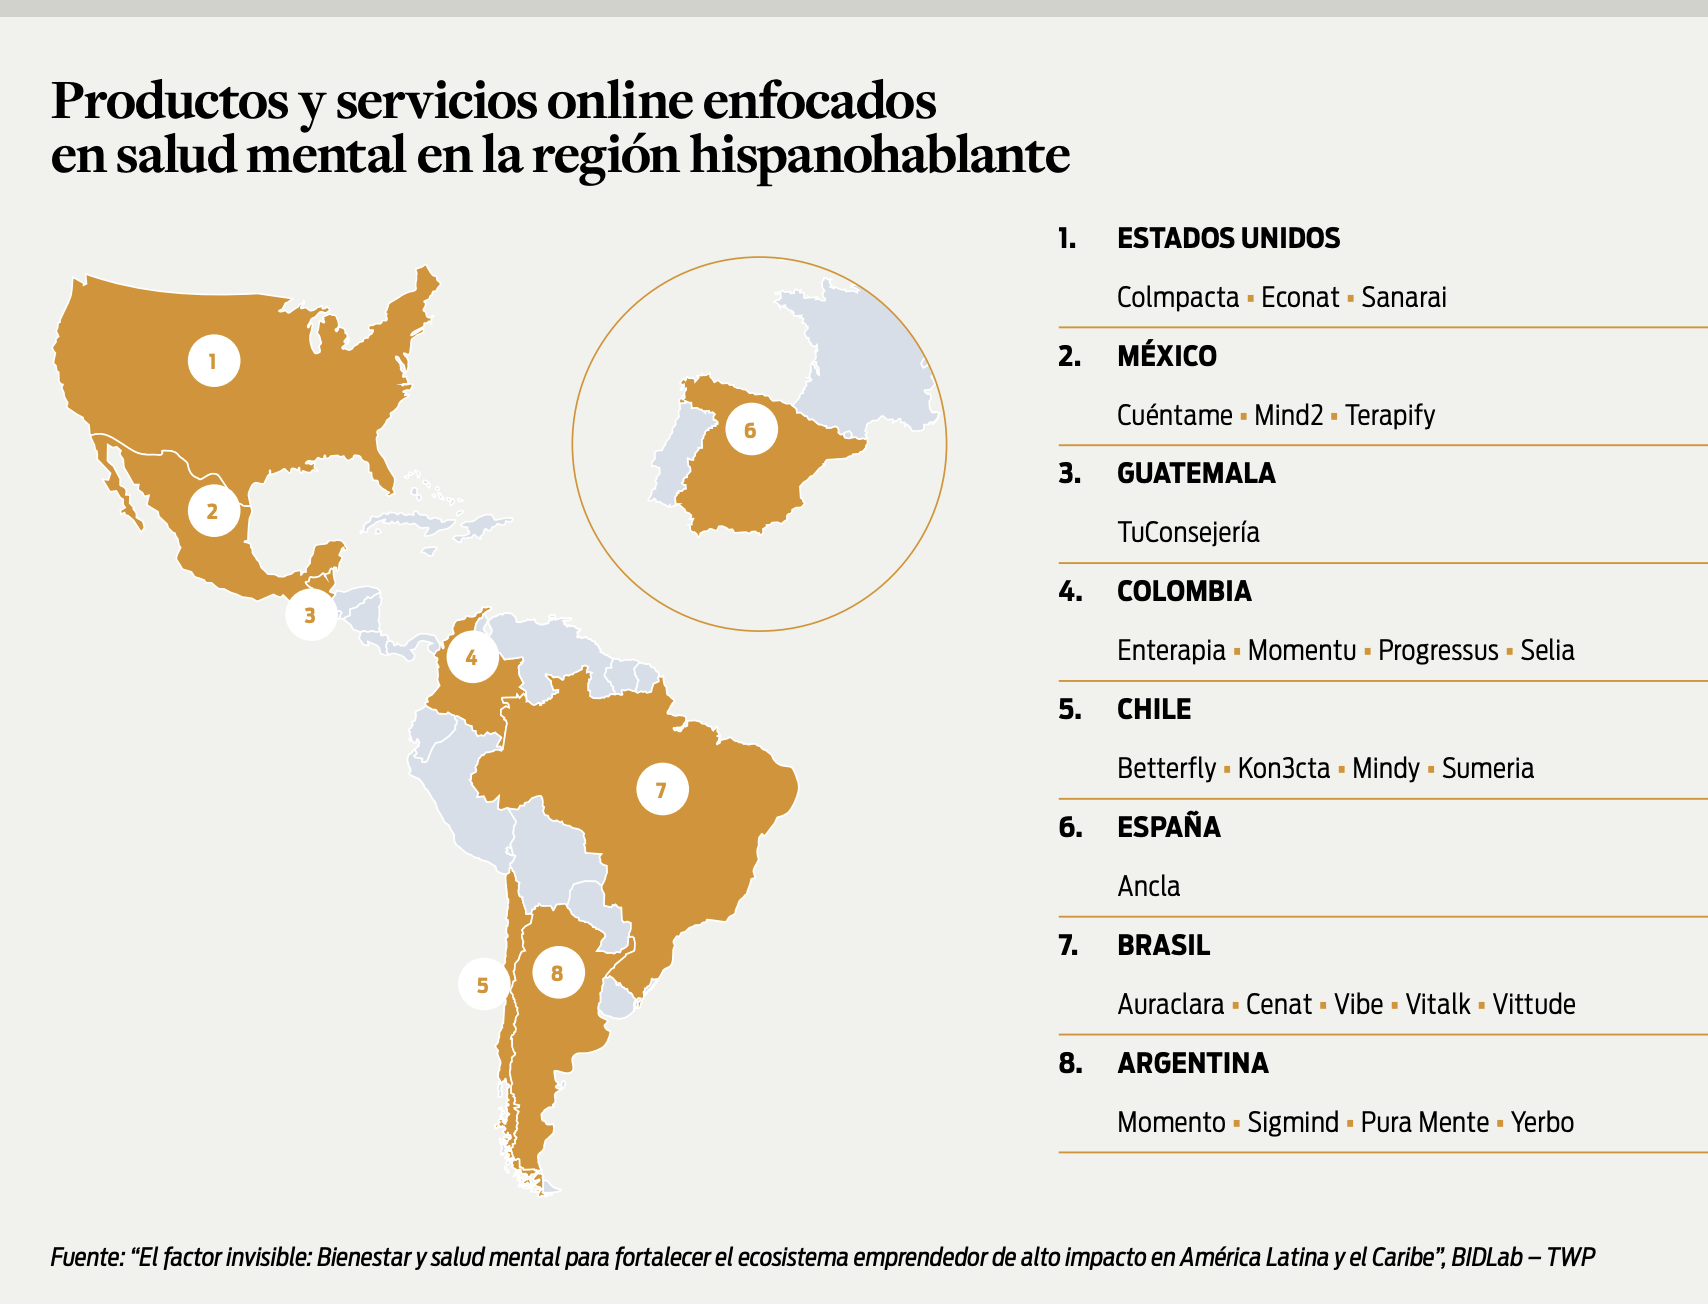 Mapa de los productos y servicios online enfocados en salud mental en la región hispanohablante